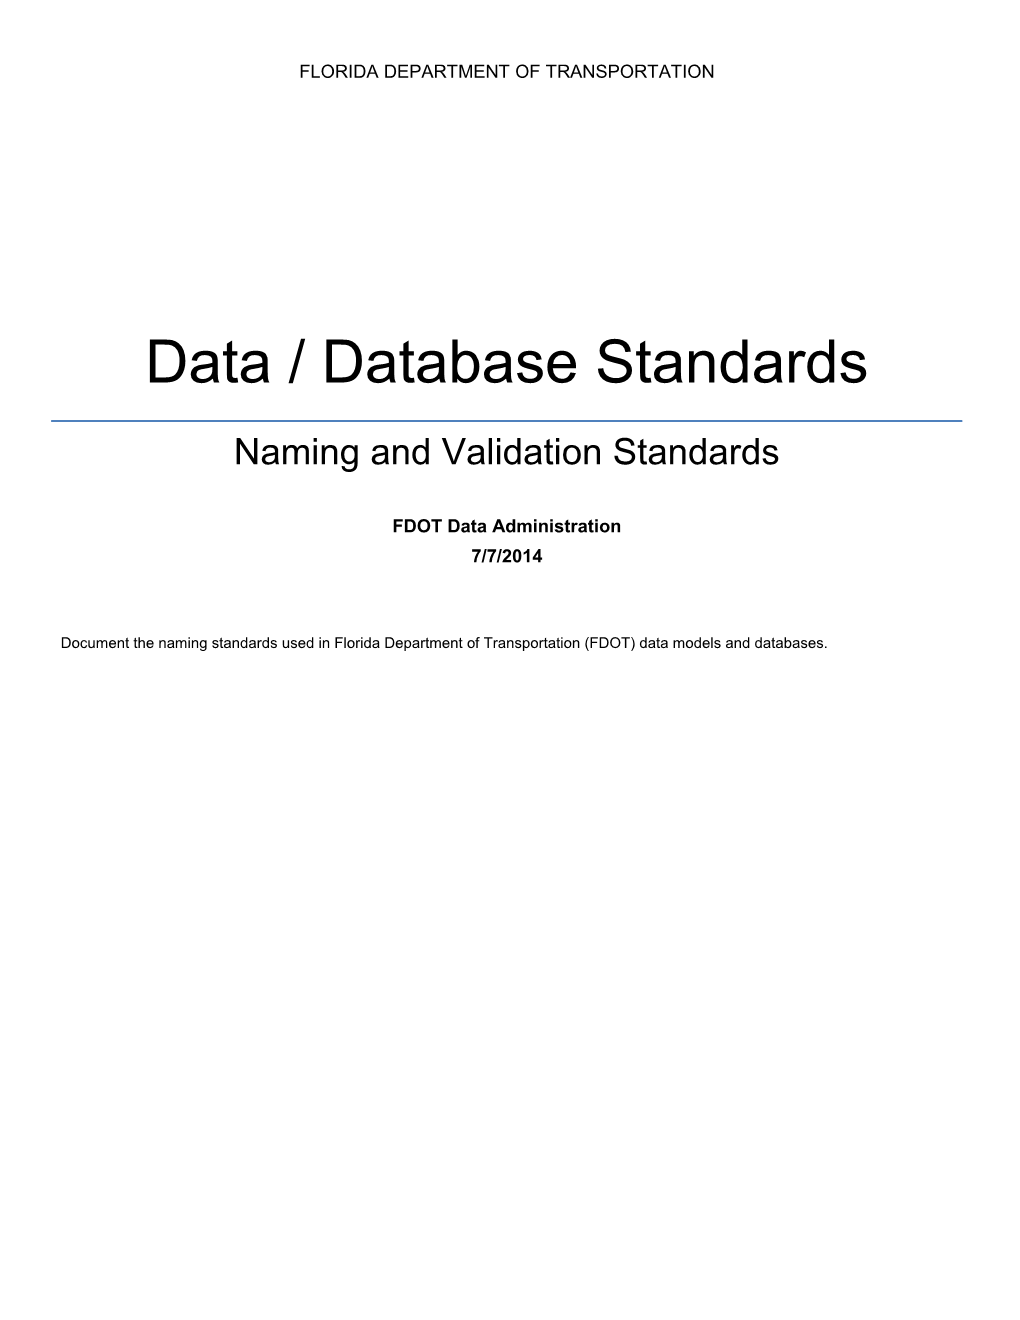 Data / Database Standards